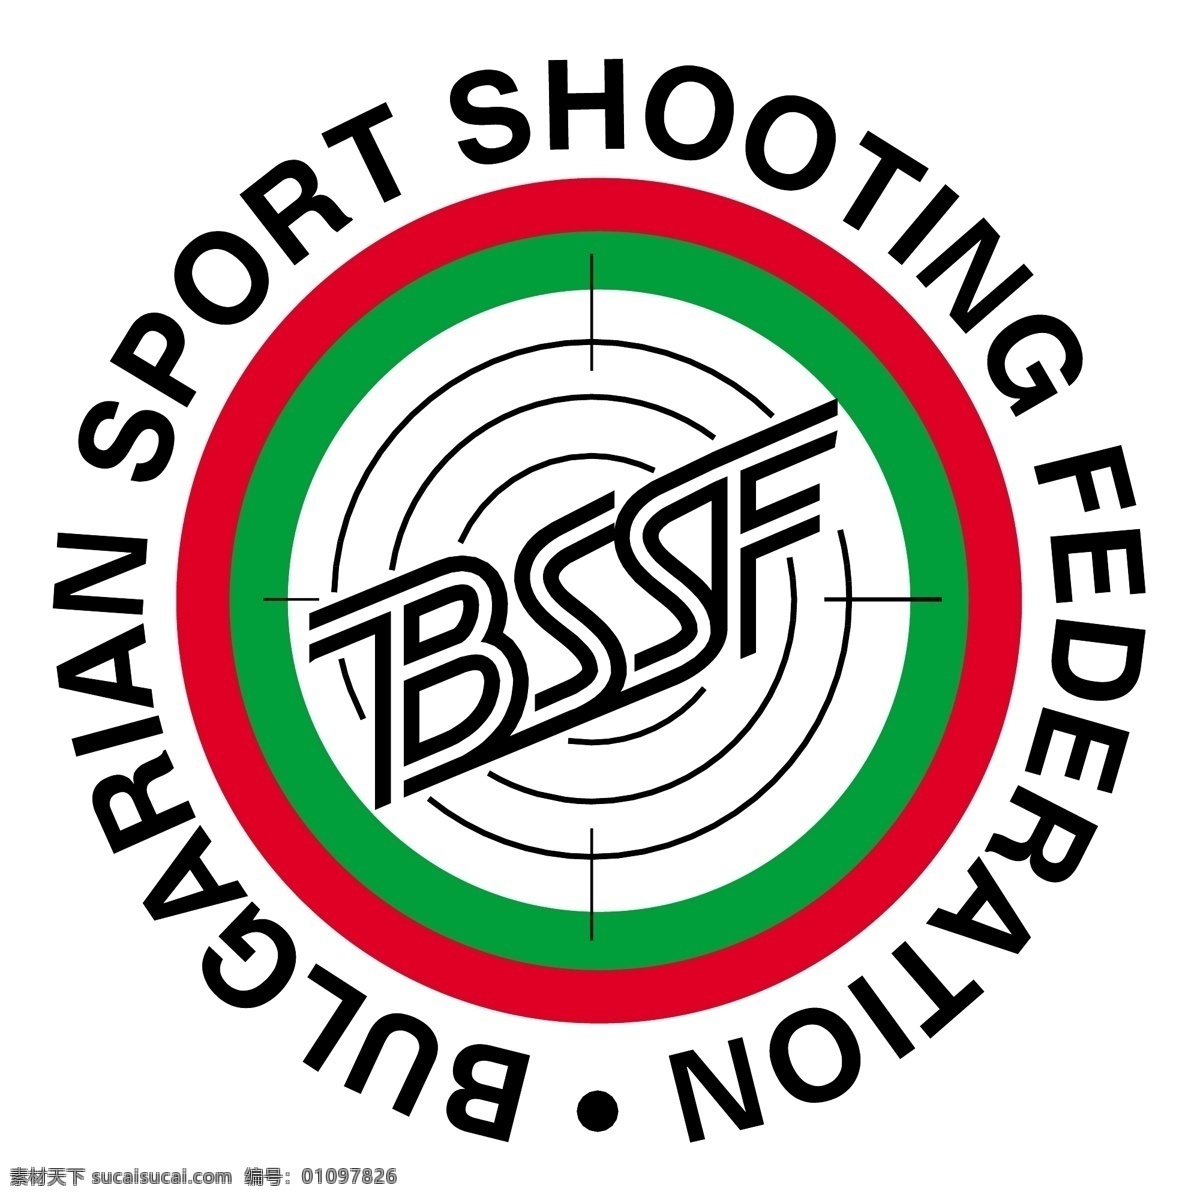 保加利亚 射击 运动 联合会 标志 免费 psd源文件 logo设计